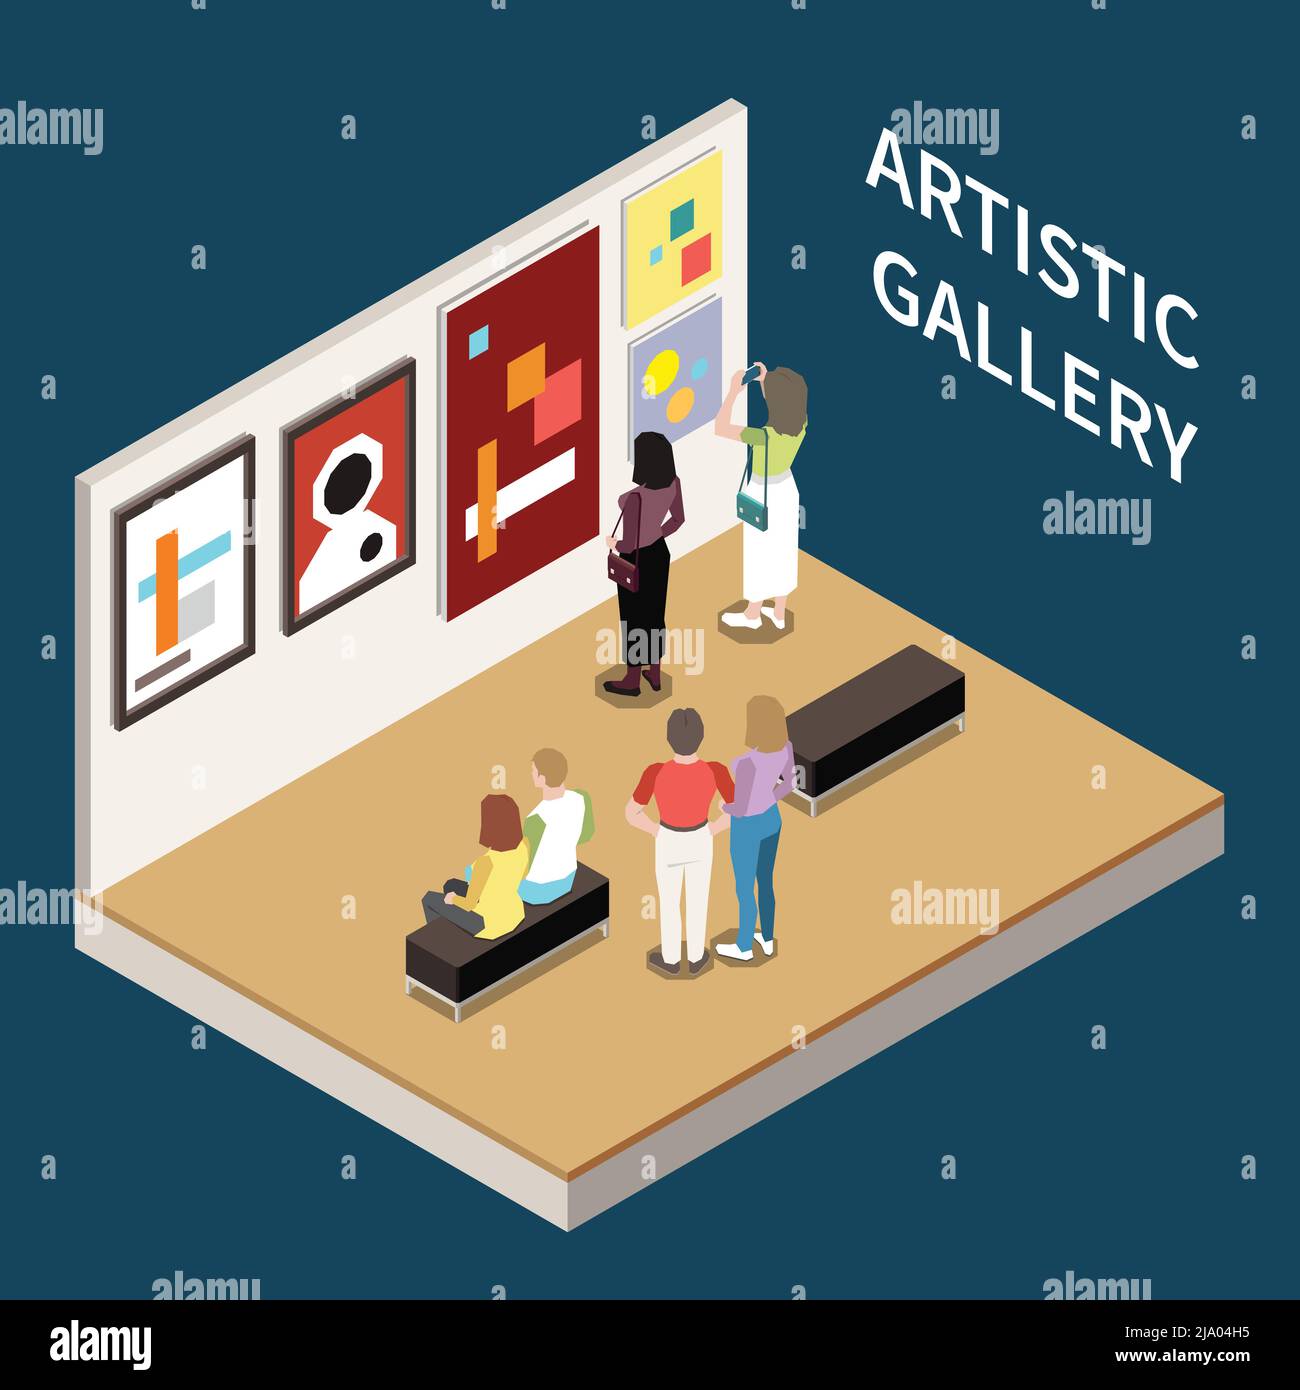 Galerie artistique fond isométrique avec des personnes regardant des images d'artistes modernes illustration vectorielle Illustration de Vecteur